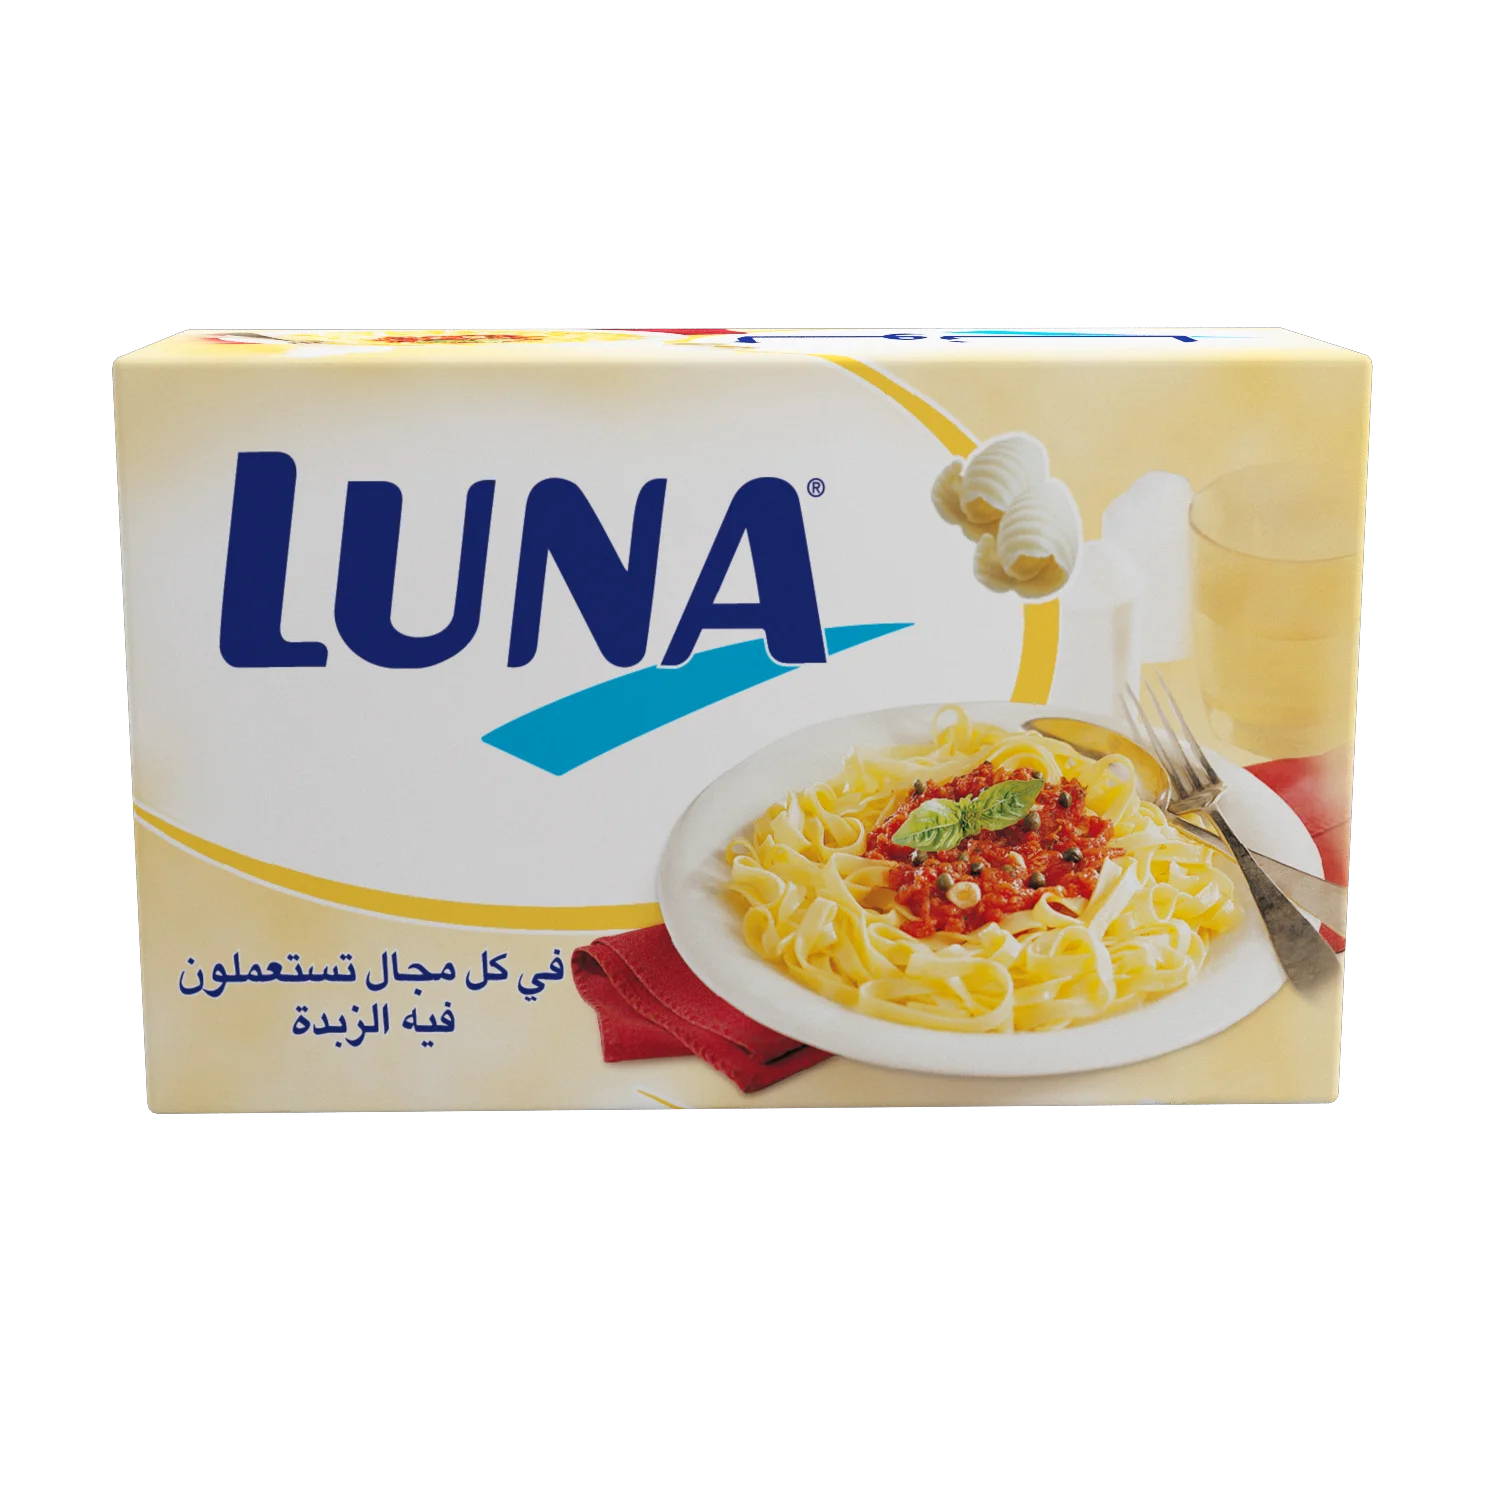 The noodle luna Luna the